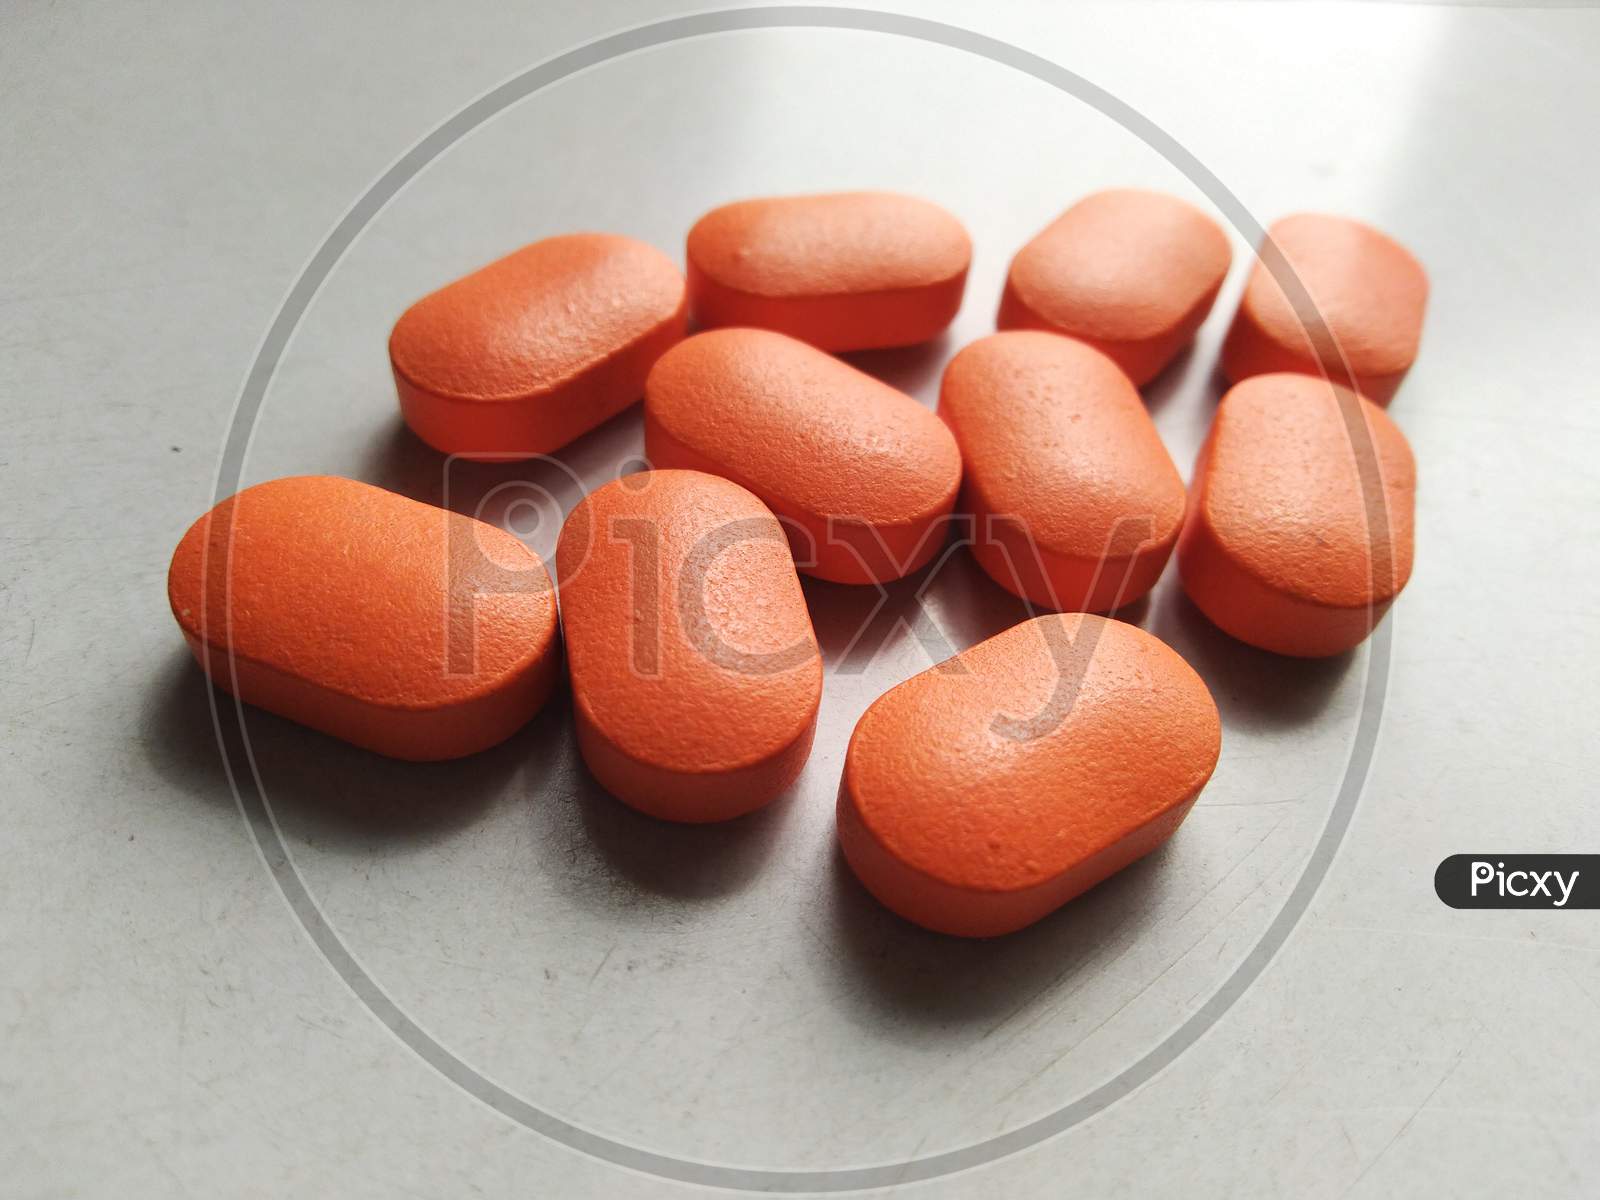 Medical medicine in the form of orange tablet